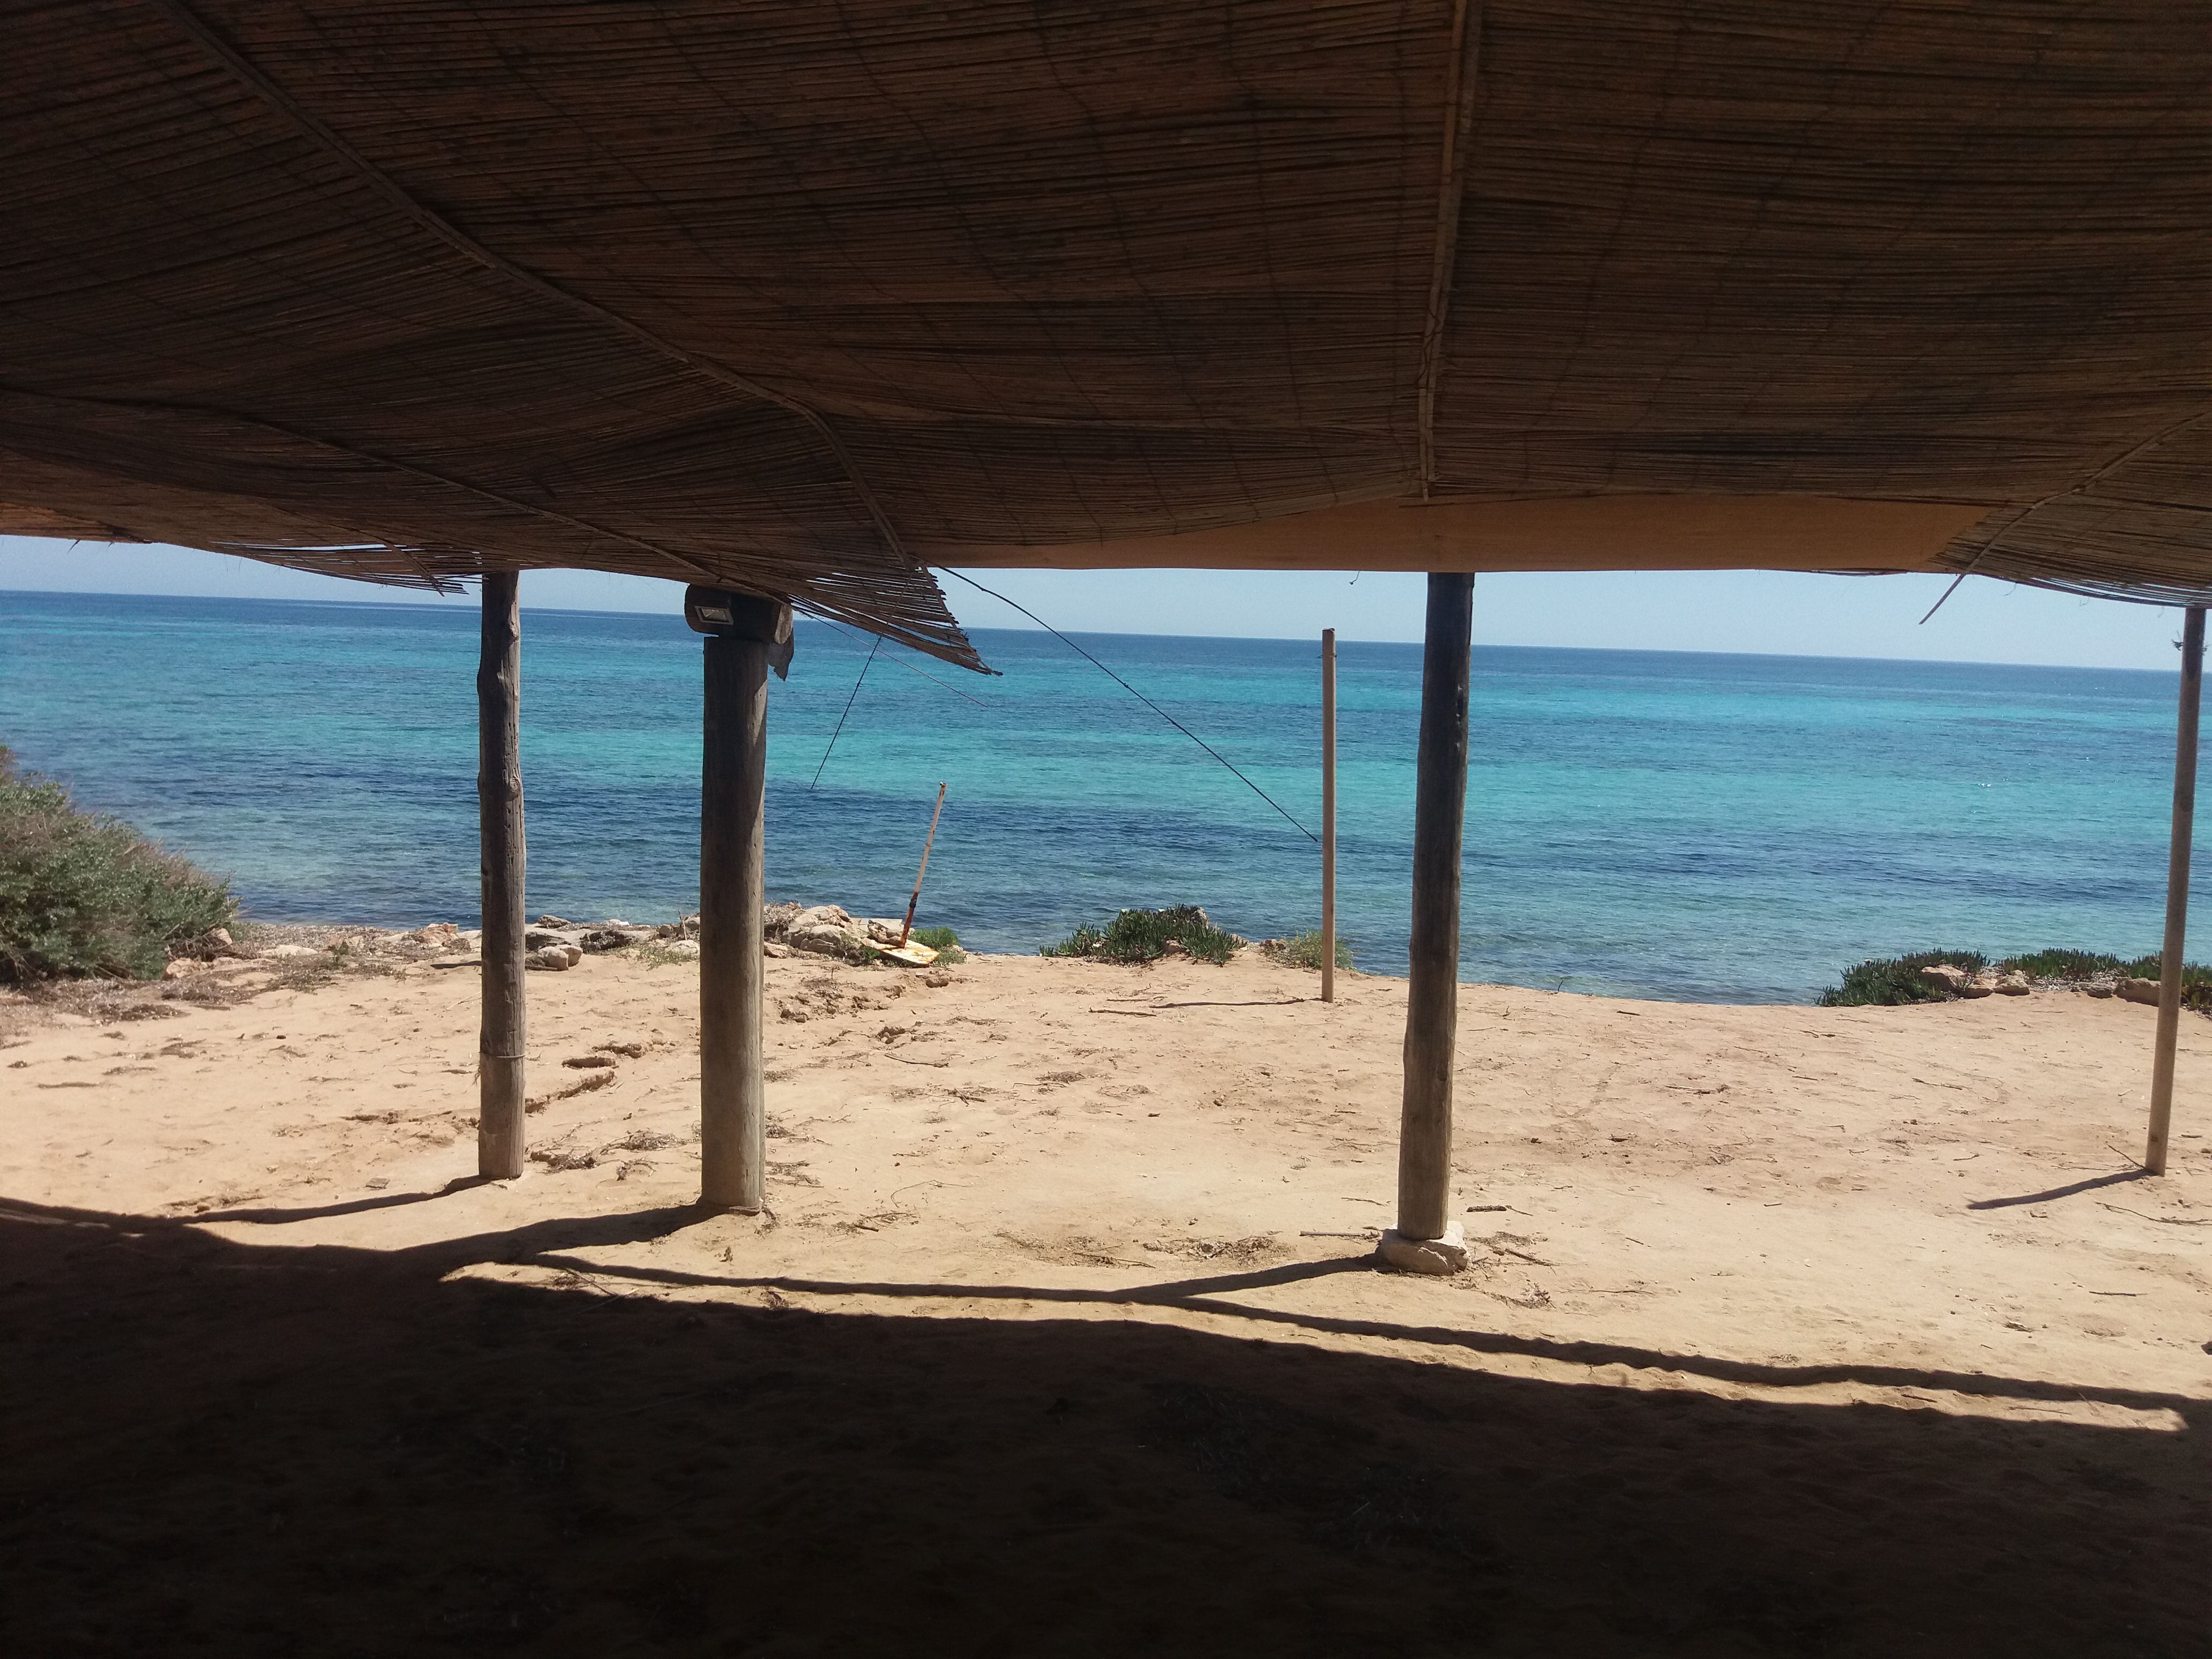 Imagen del chiringuito Pelayo en Formentera.